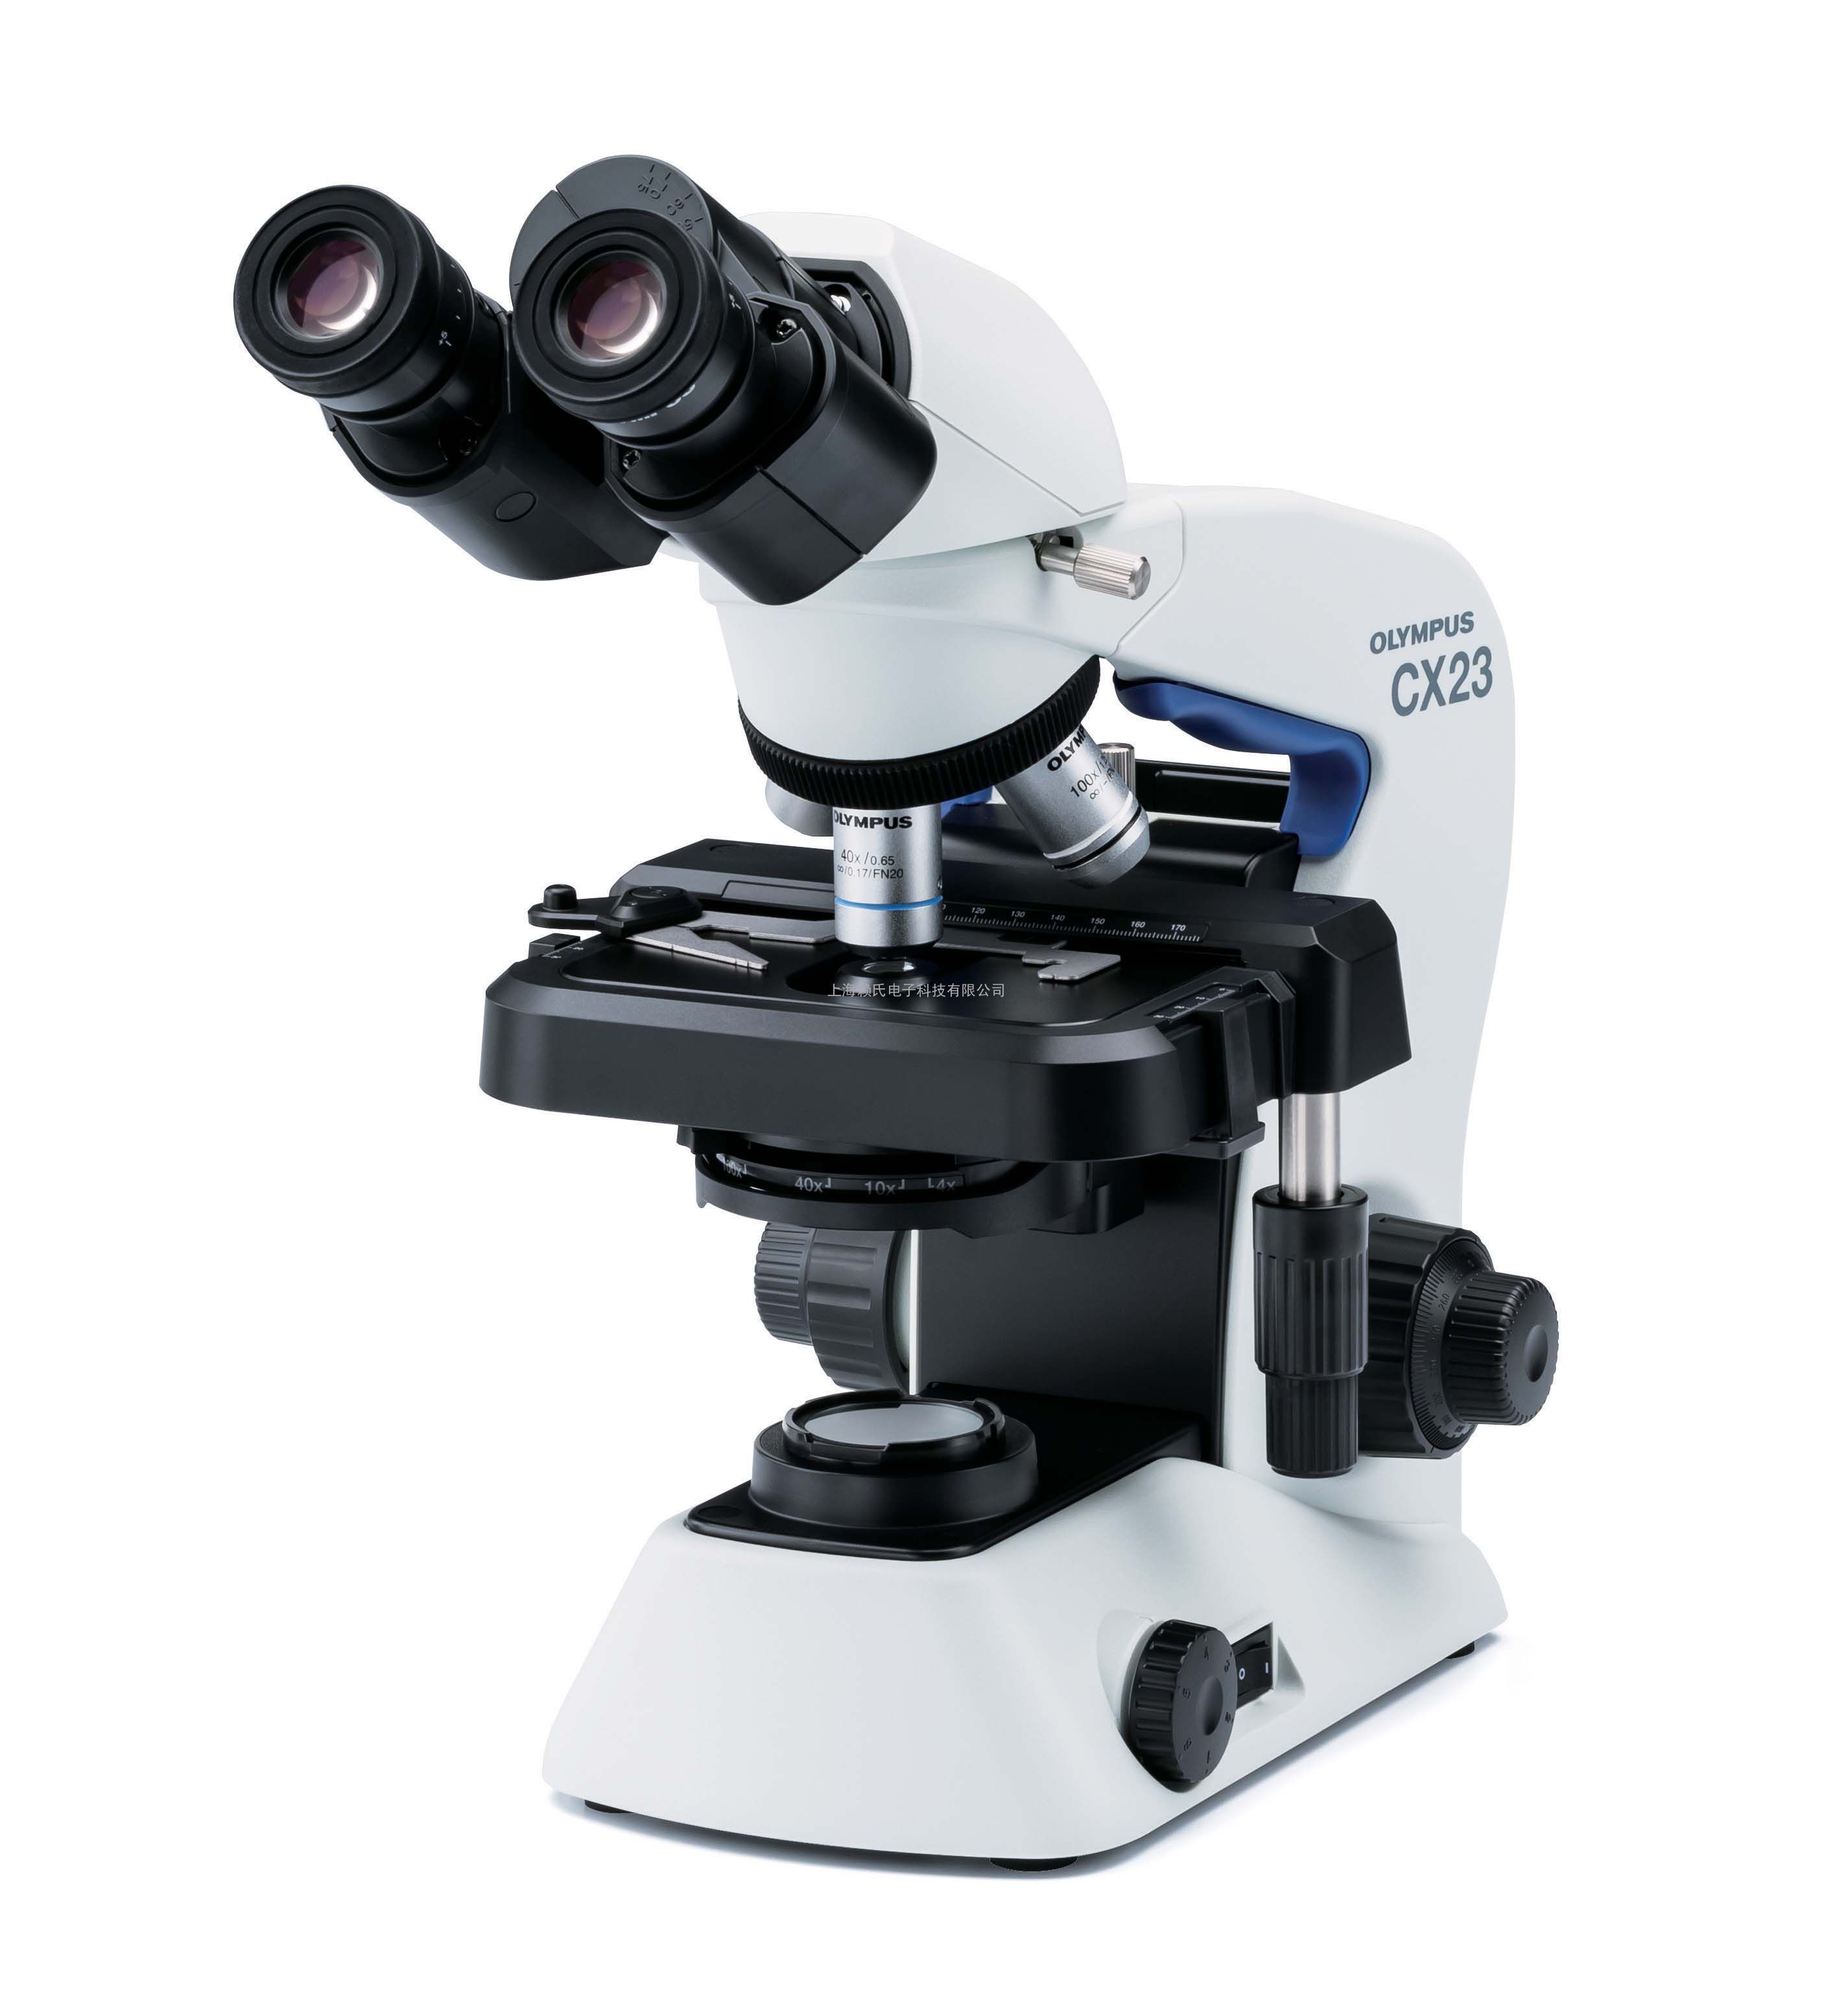 Популярность современной оснастки брендовых микроскопов Olympus